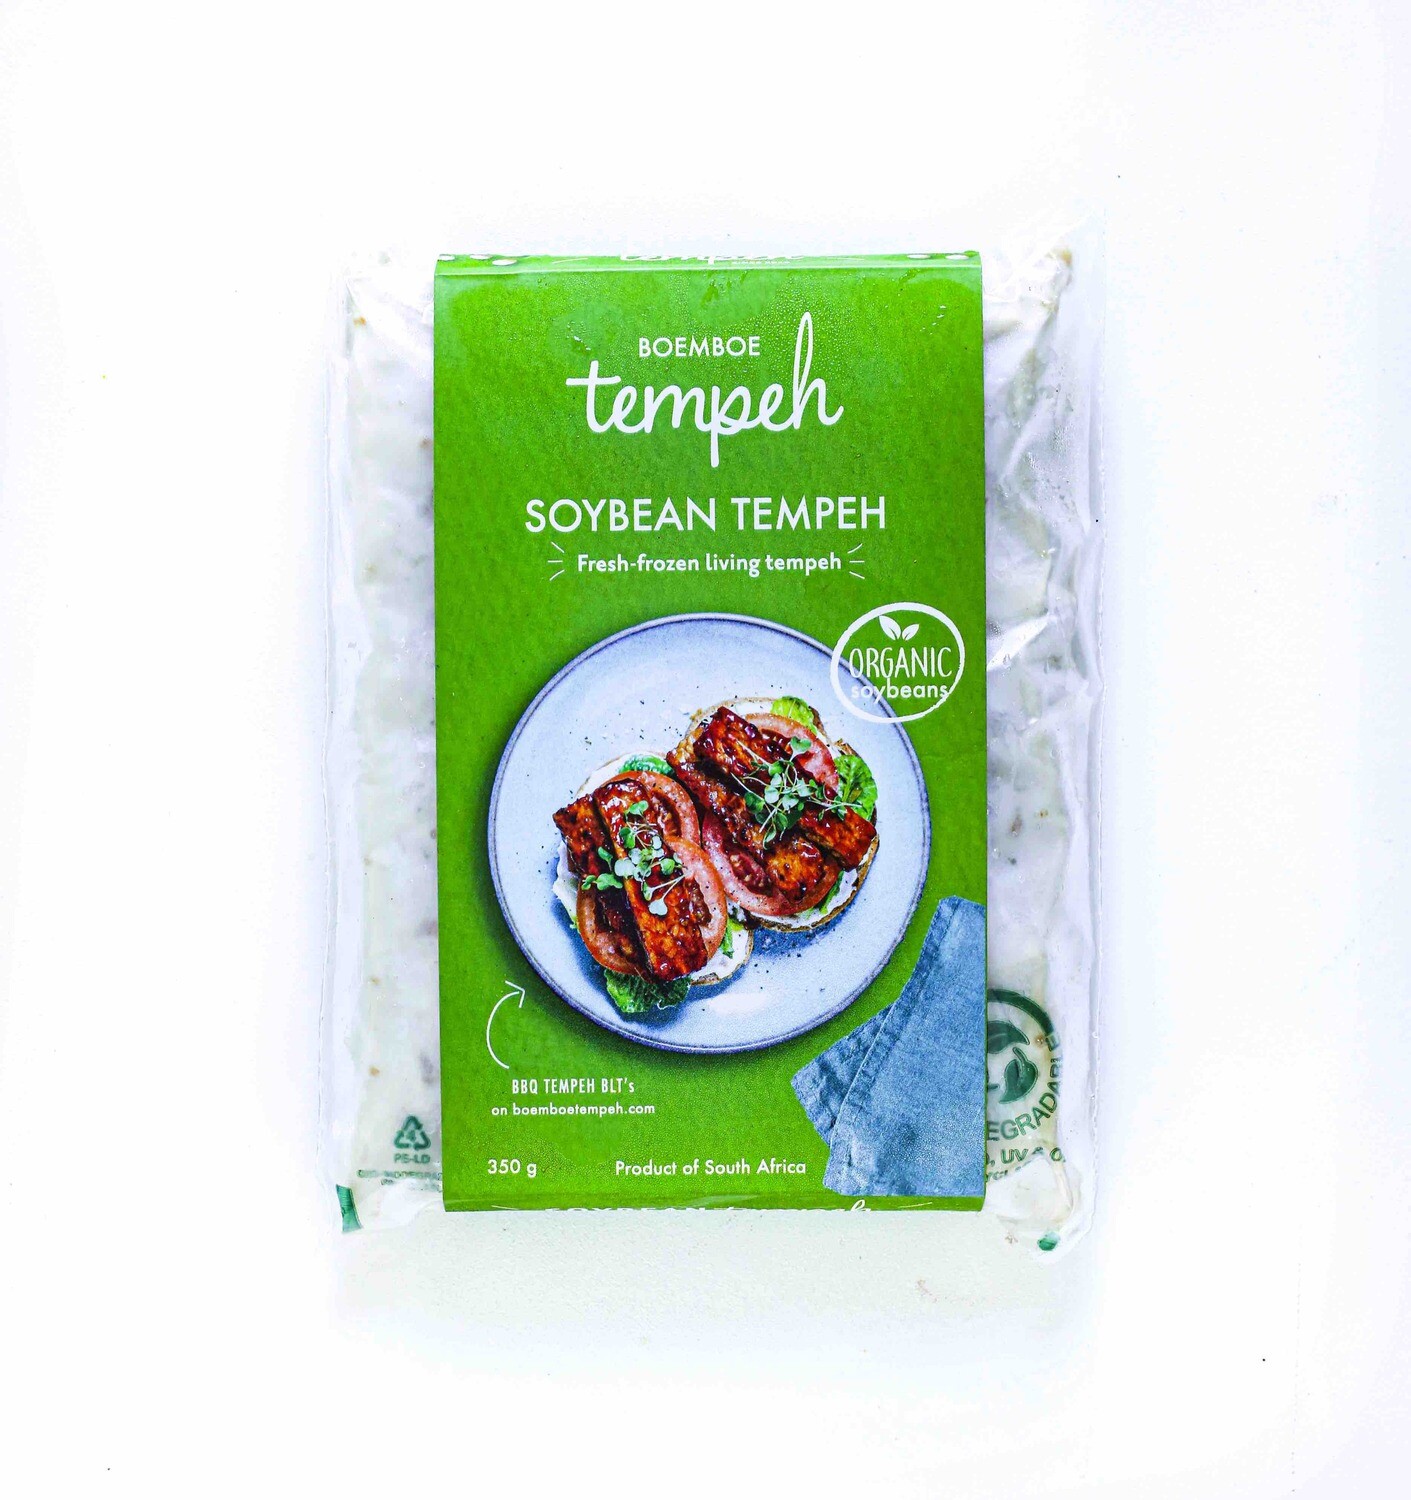 Boemboe soybean tempeh, non-GMO